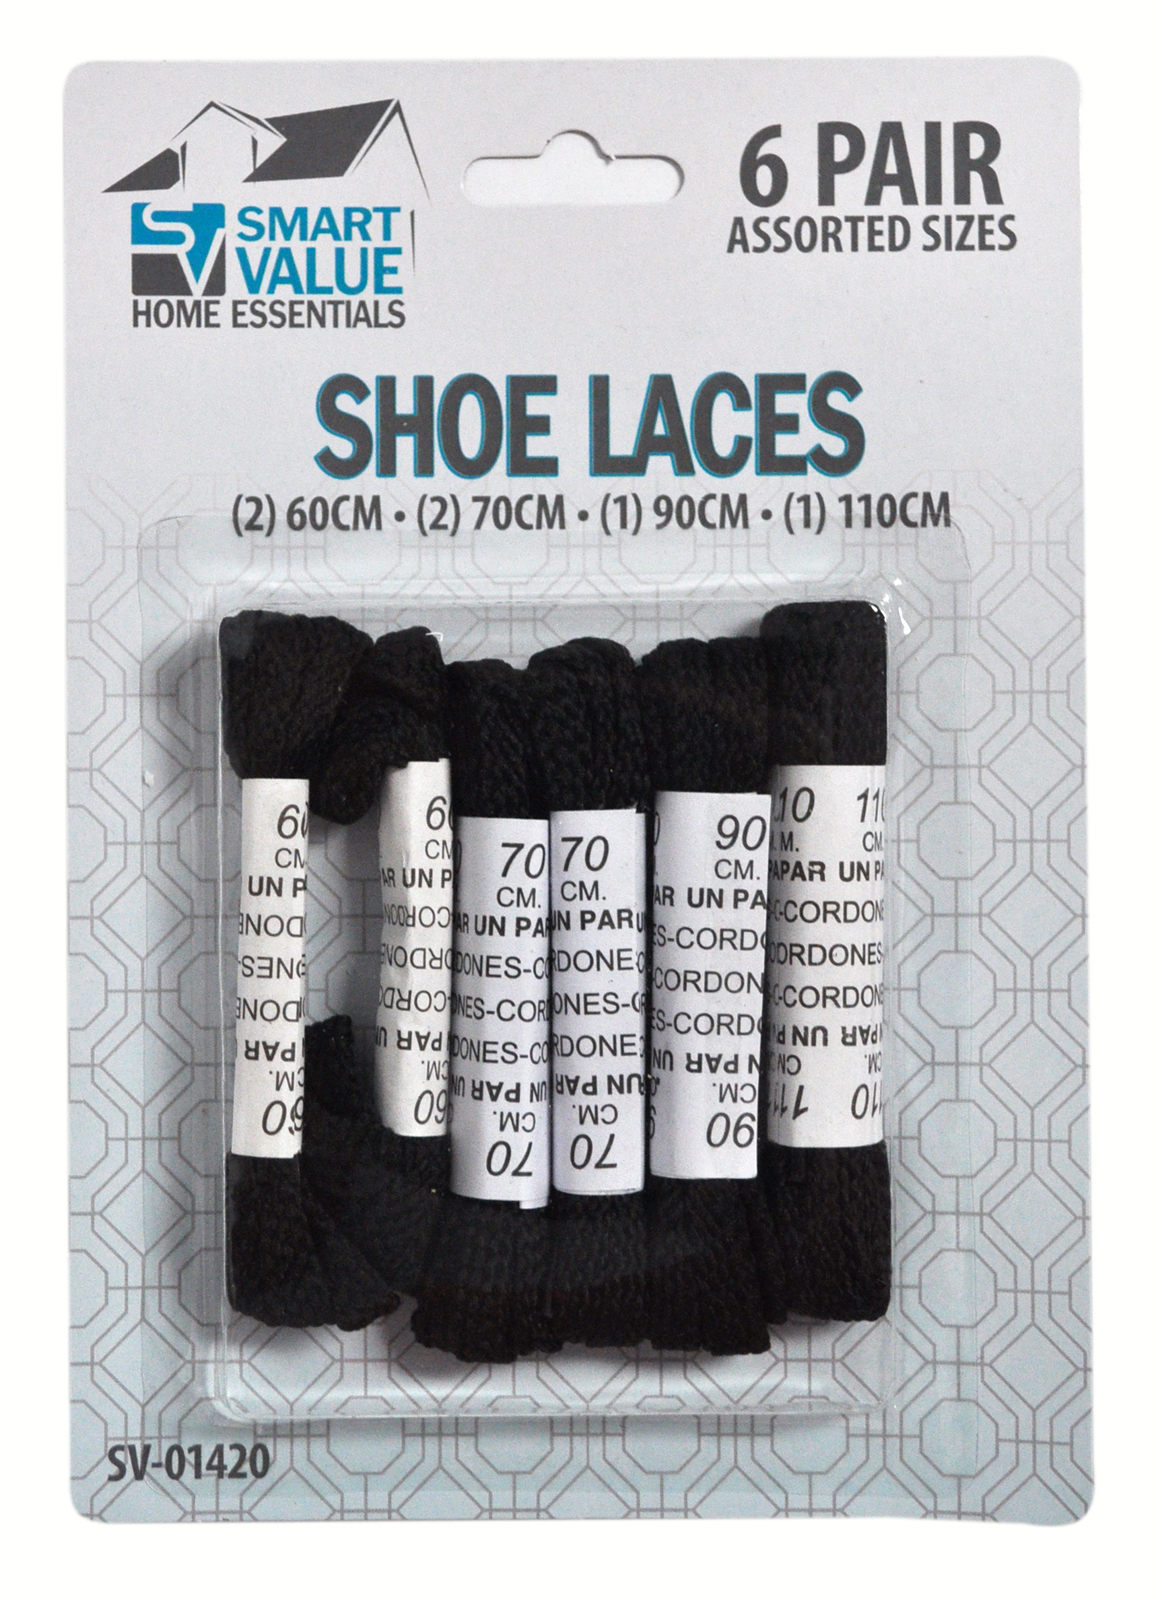 Smart Value Black Shoelaces Assorted Sizes Dixon S Vacuum And Sewing Centerdixon S Vacuum And Sewing Center